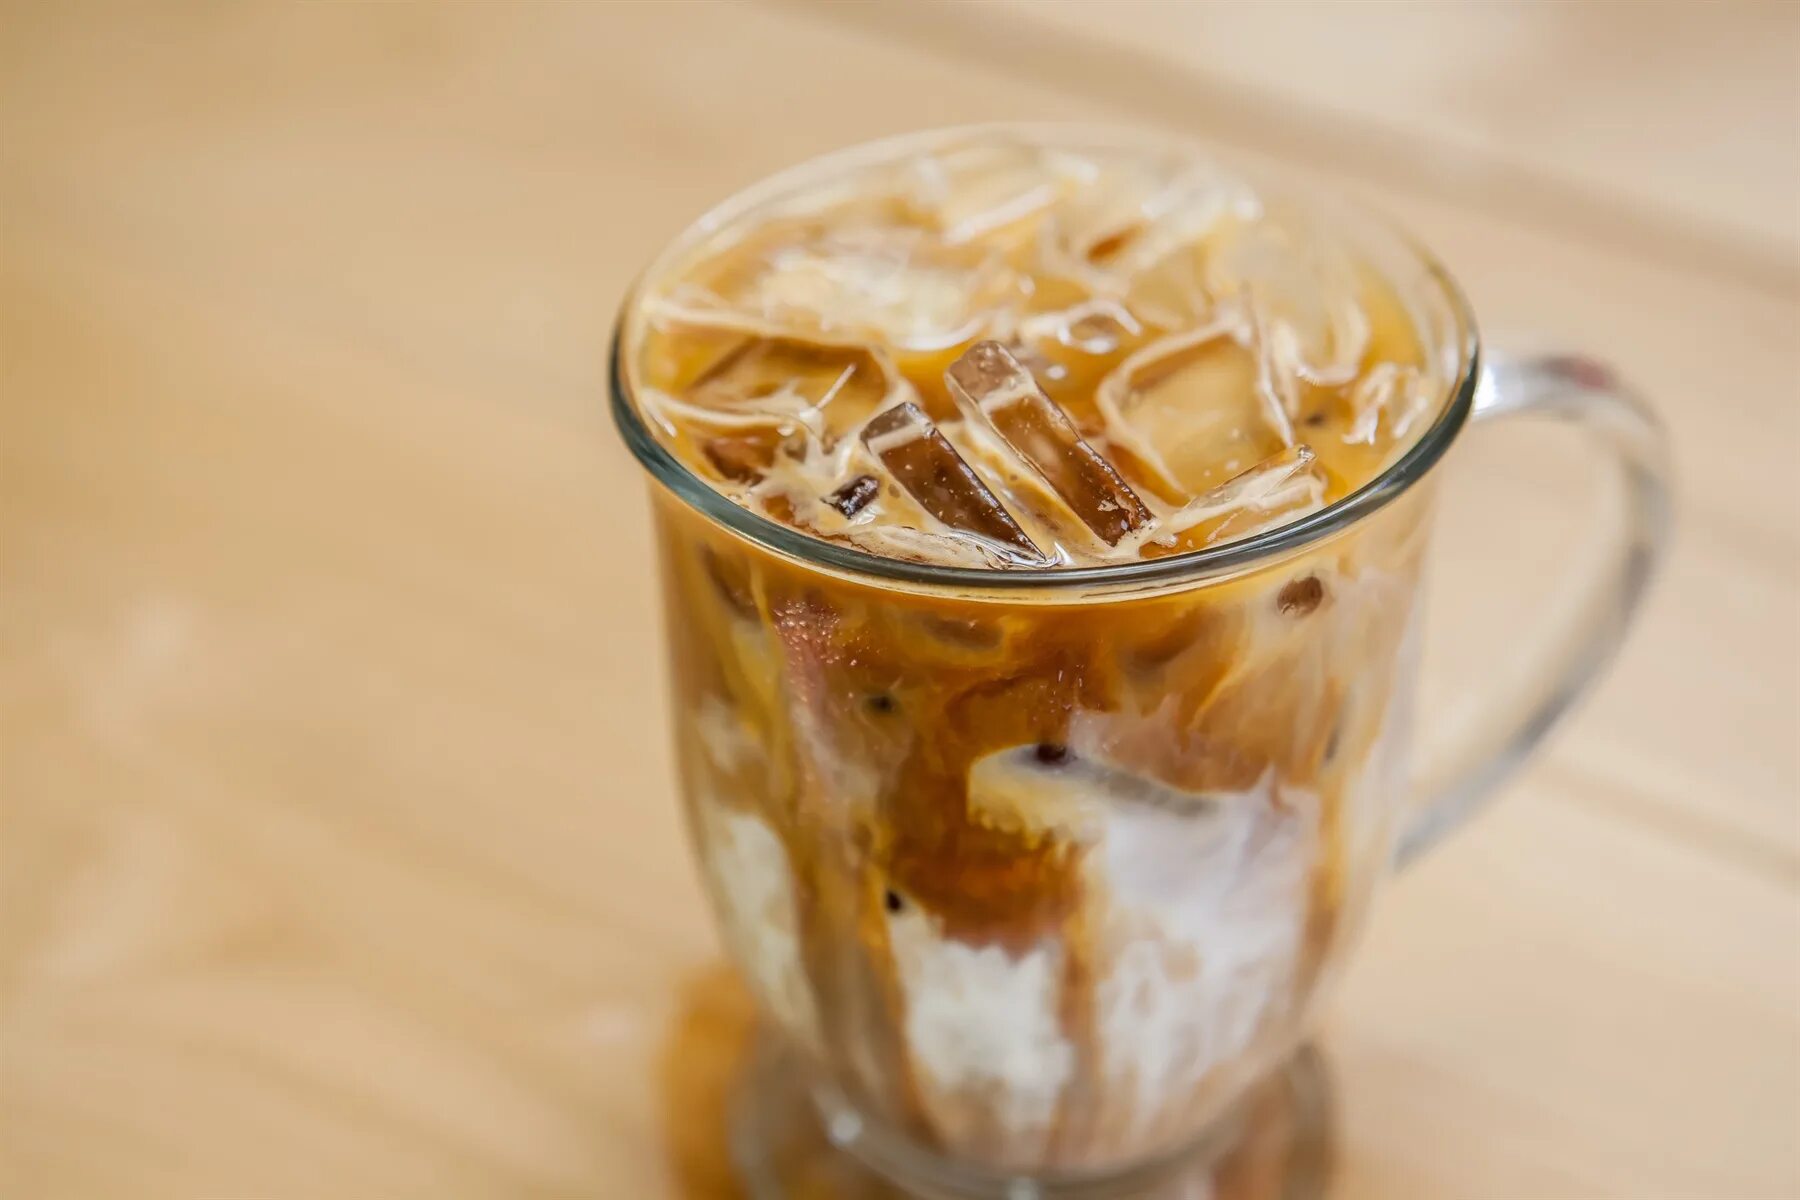 Айс латте. Холодный кофе ( Iced Latte). Кофе со льдом. Капучино со льдом. Холодный кофе с льдом